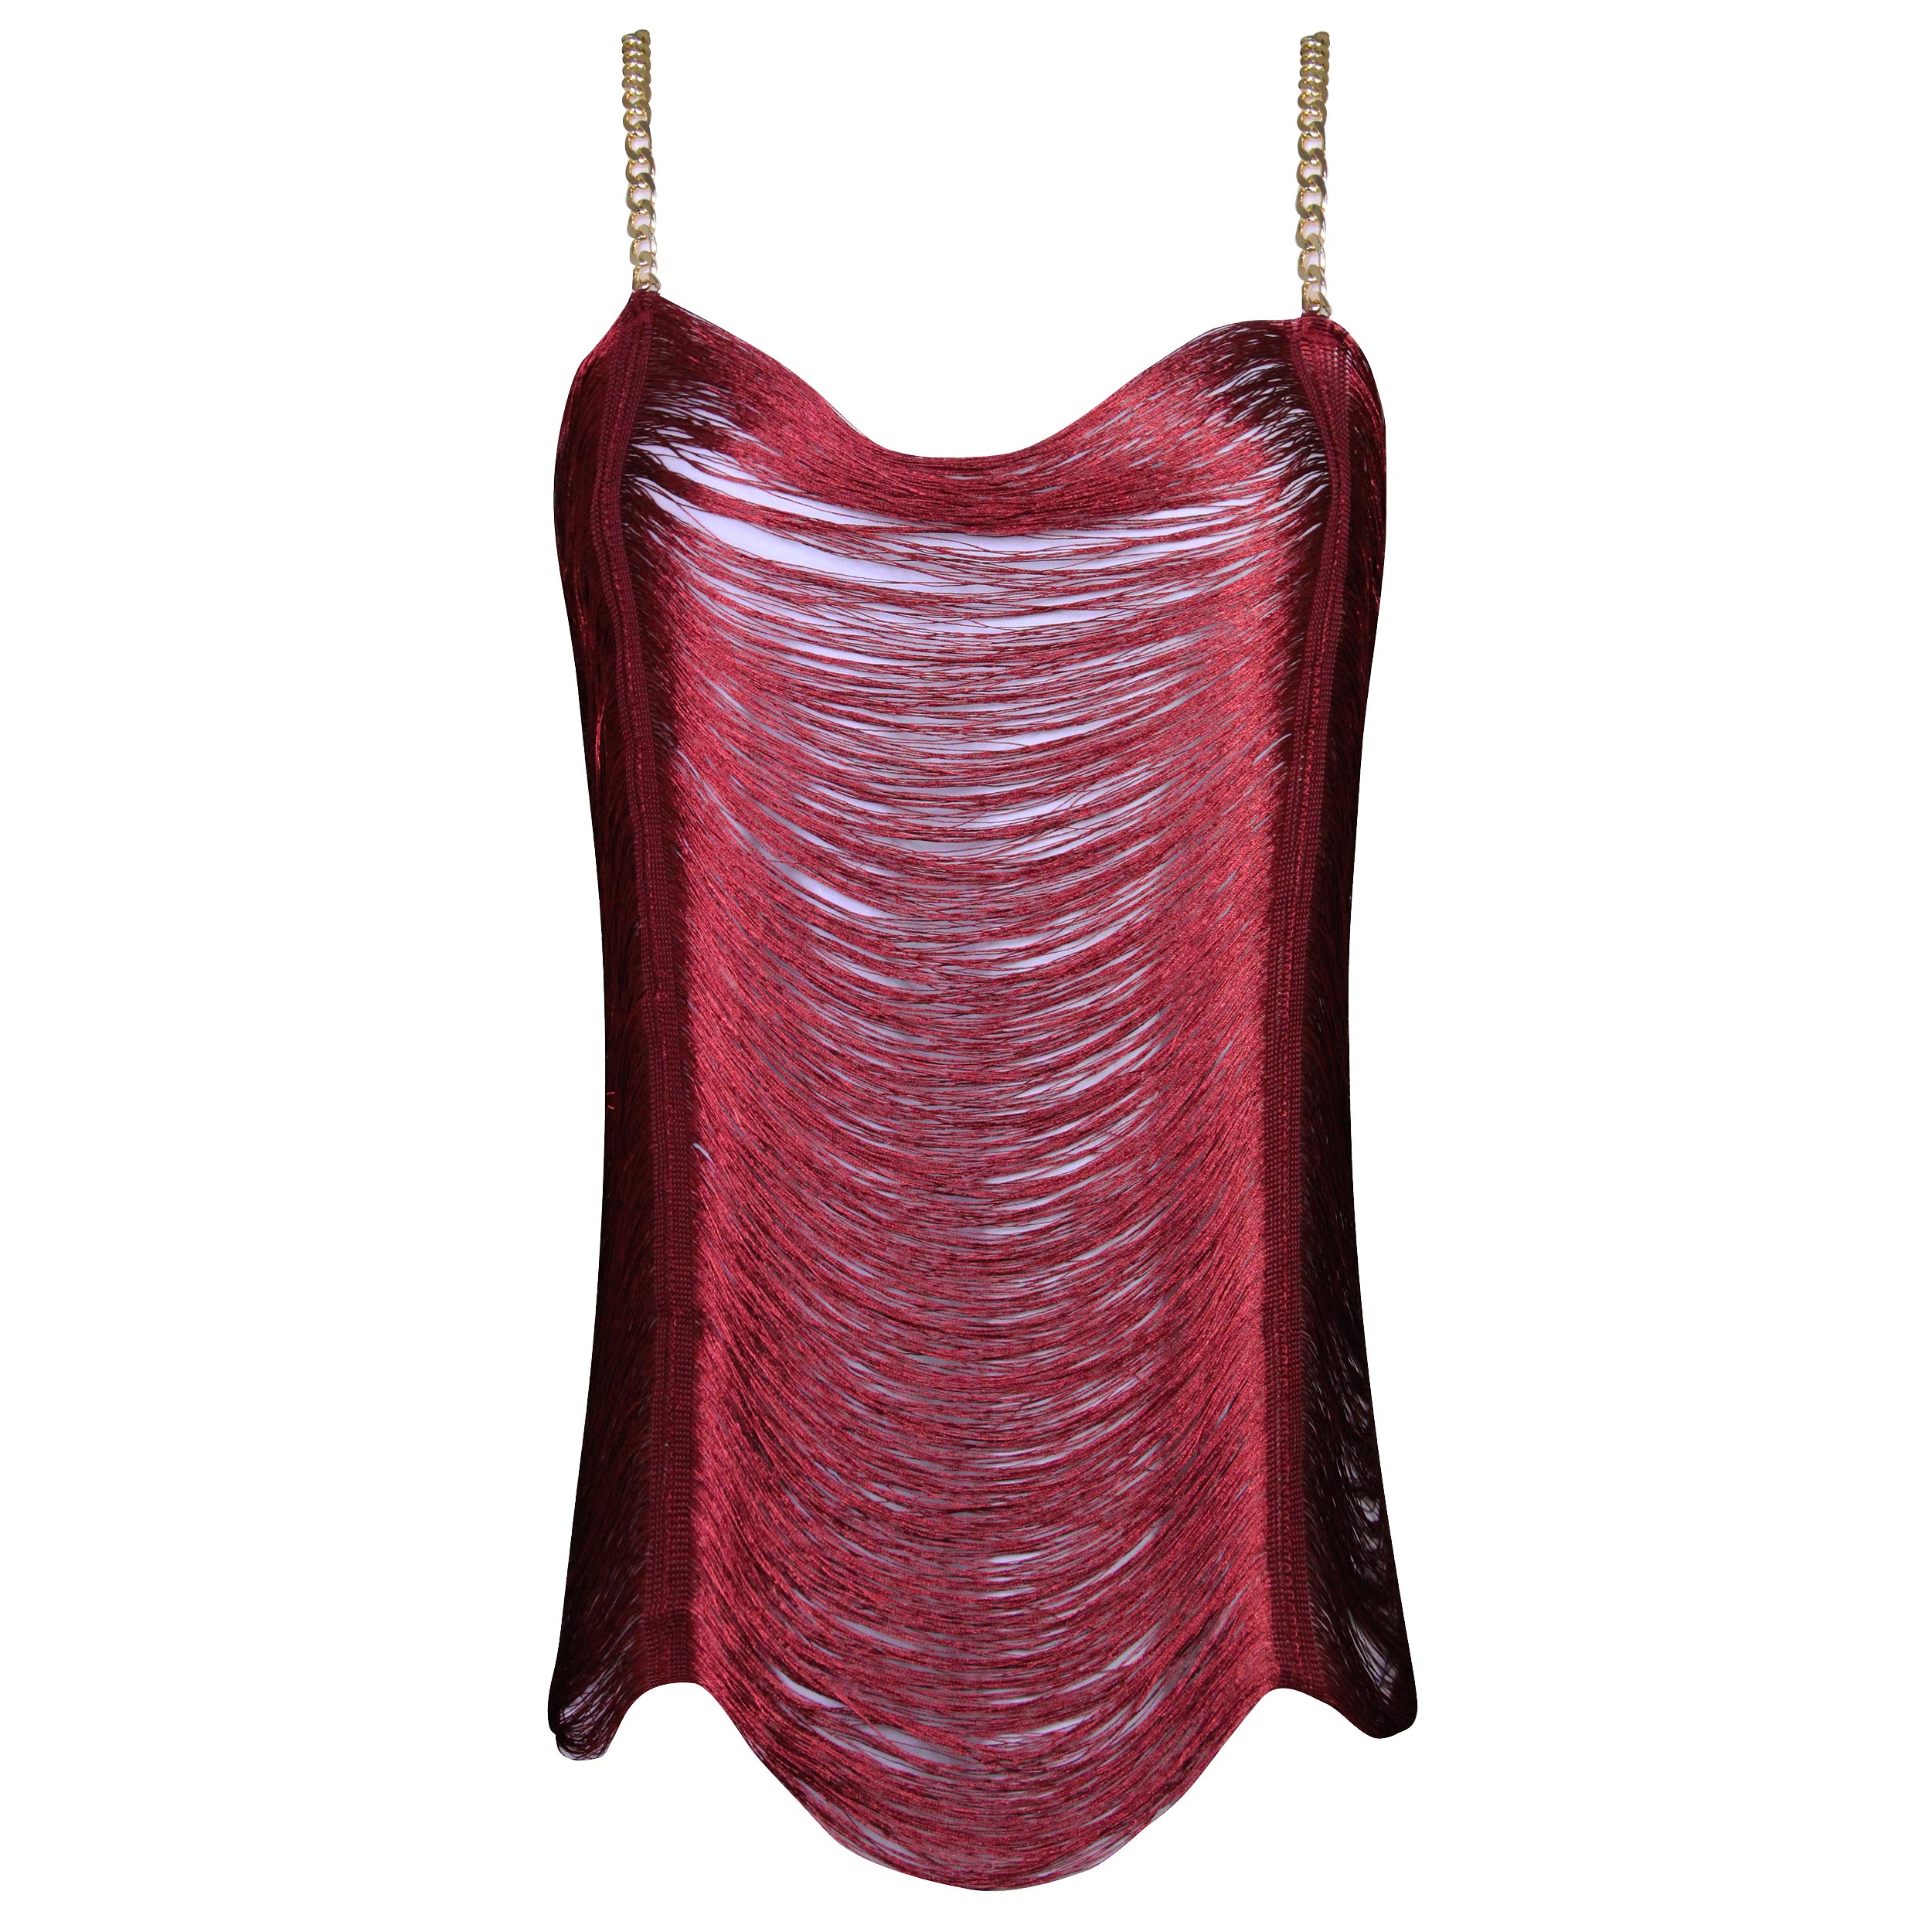 لباس خواب زنانه ماییلدا مدل ریش ریش کد 4709-3002 رنگ زرشکی -  - 2